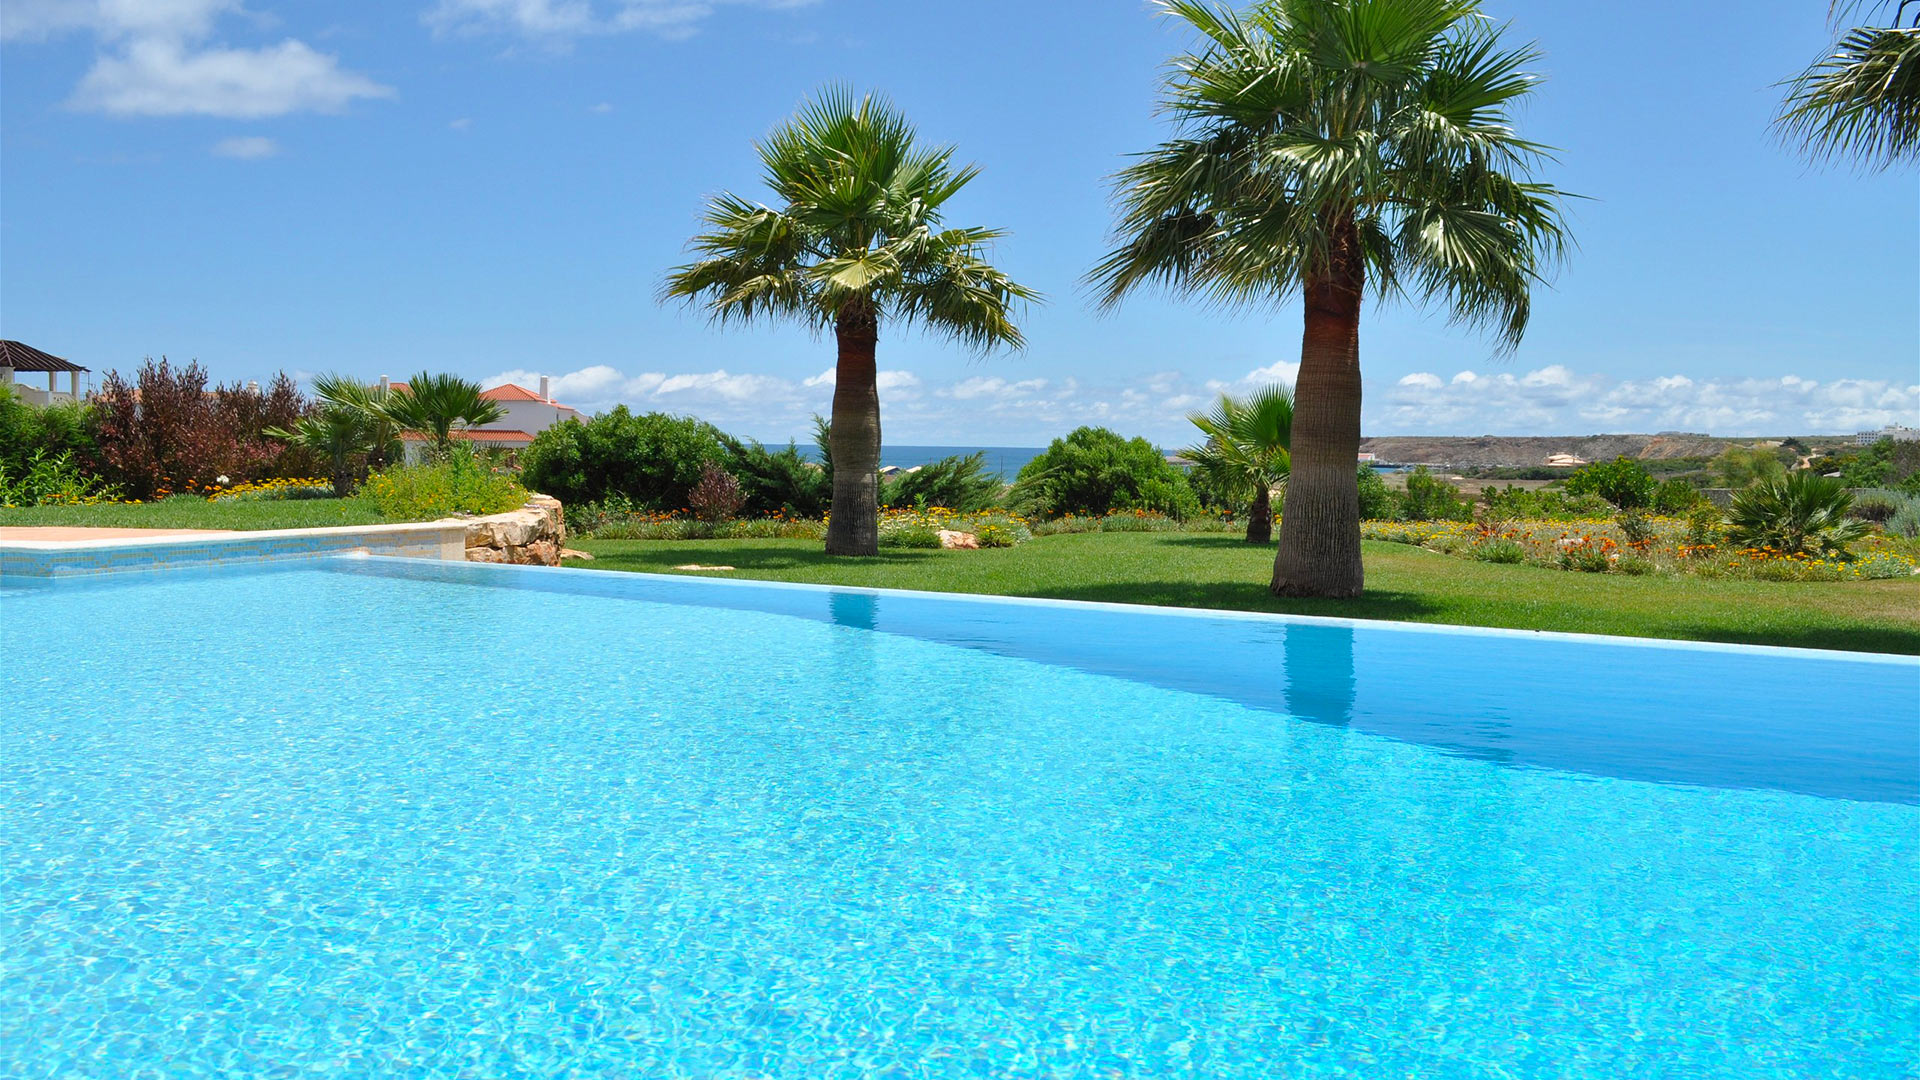 Villa Villa Martinhal Resort 7, Rental in Algarve